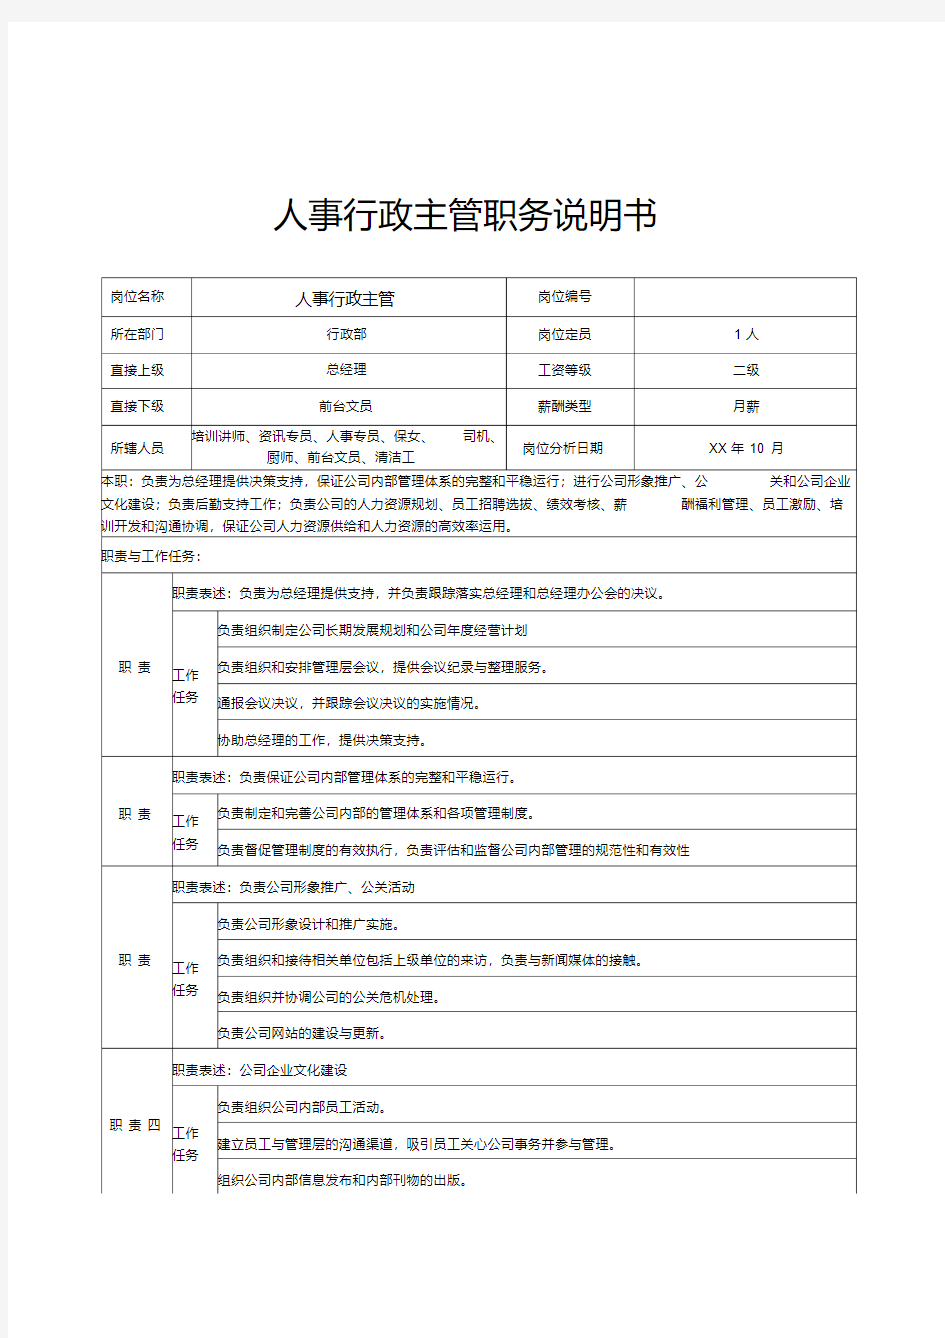 人事行政主管职务说明书.pdf